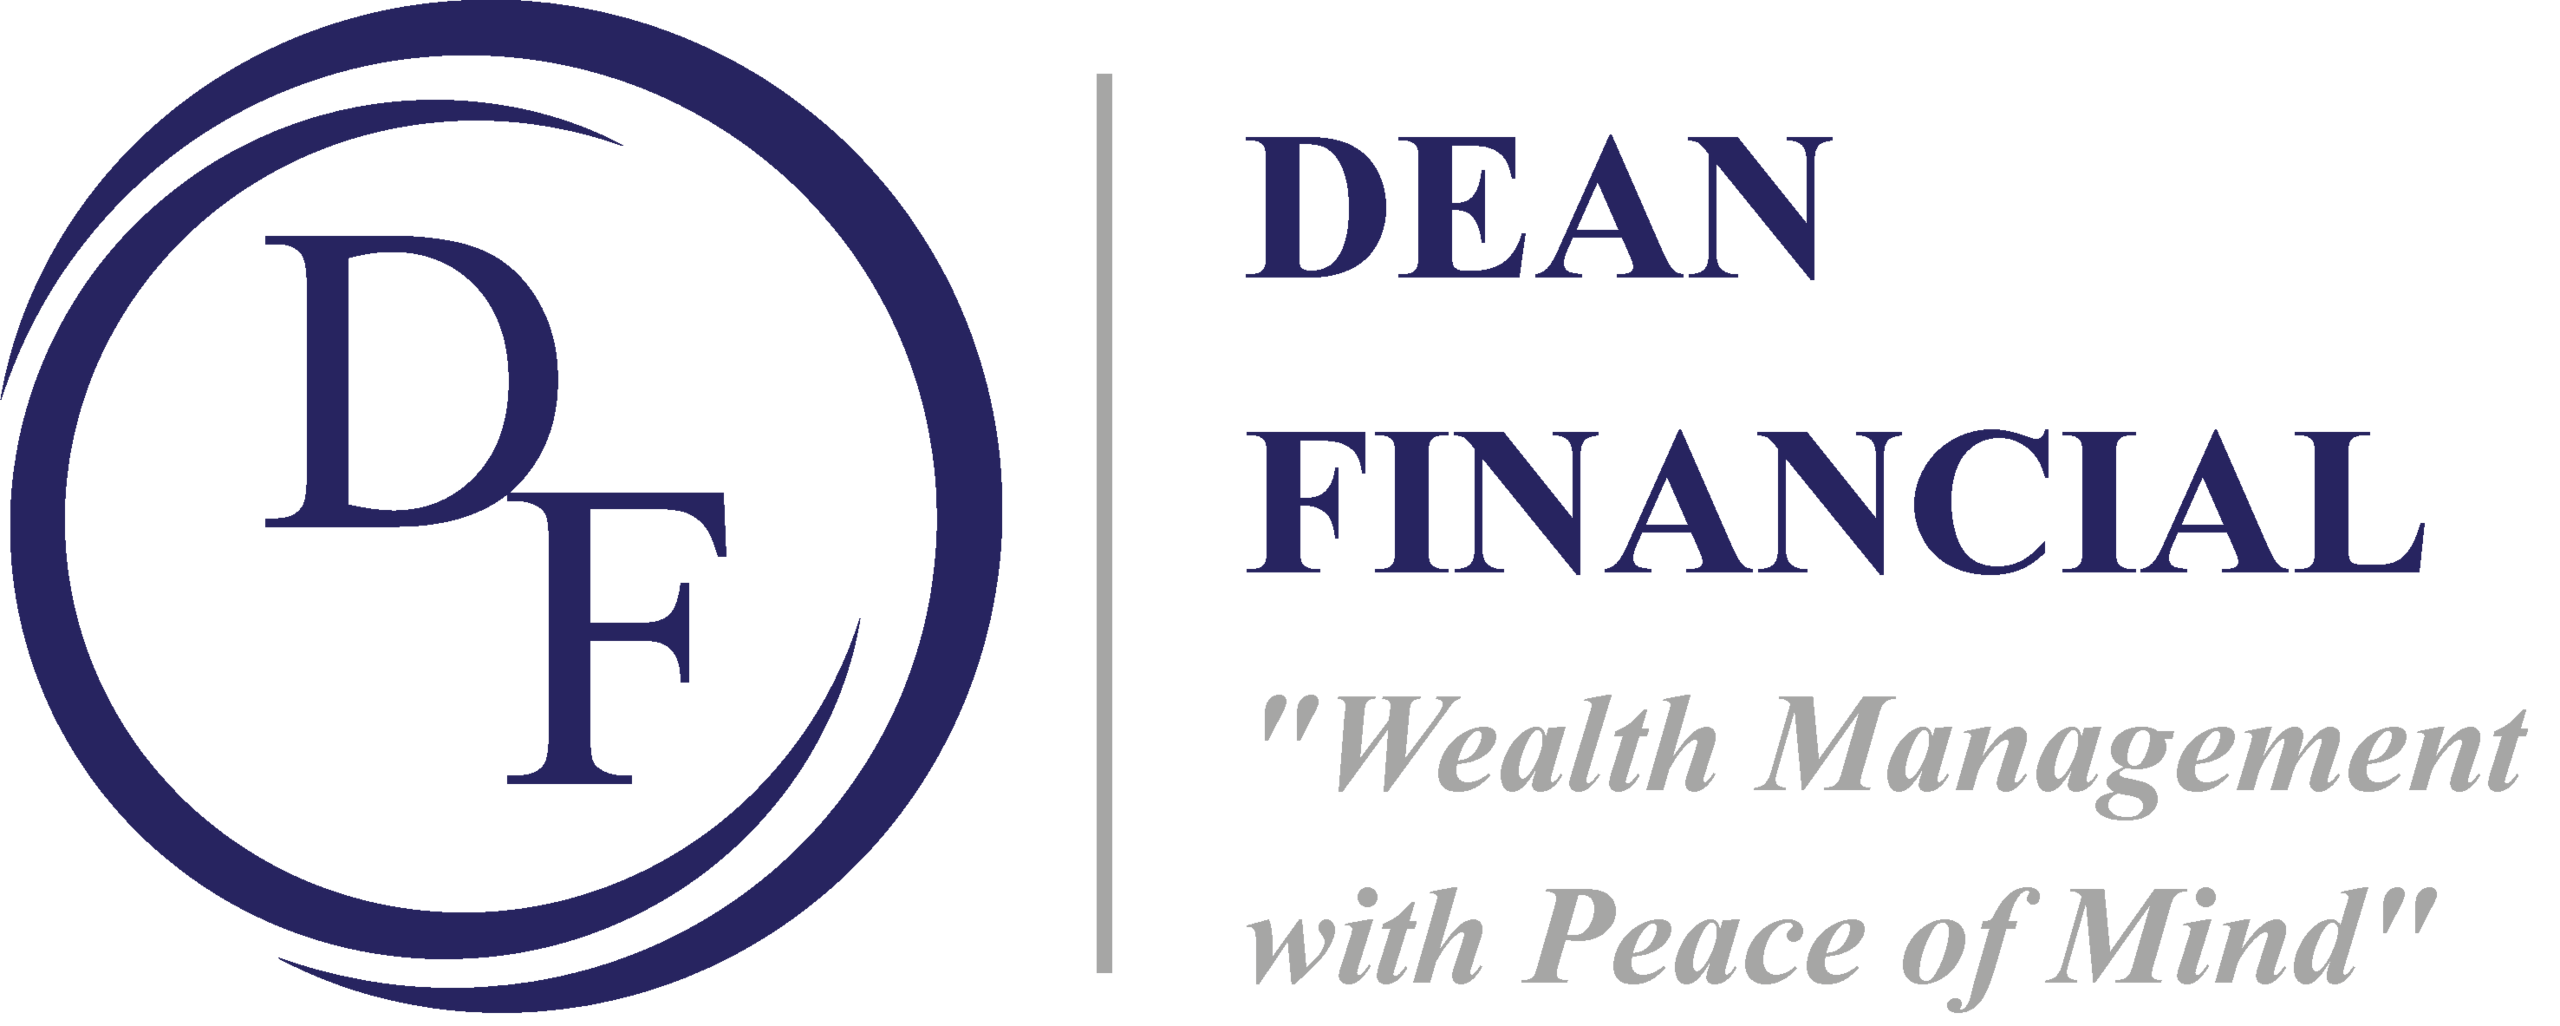 Dean Financial